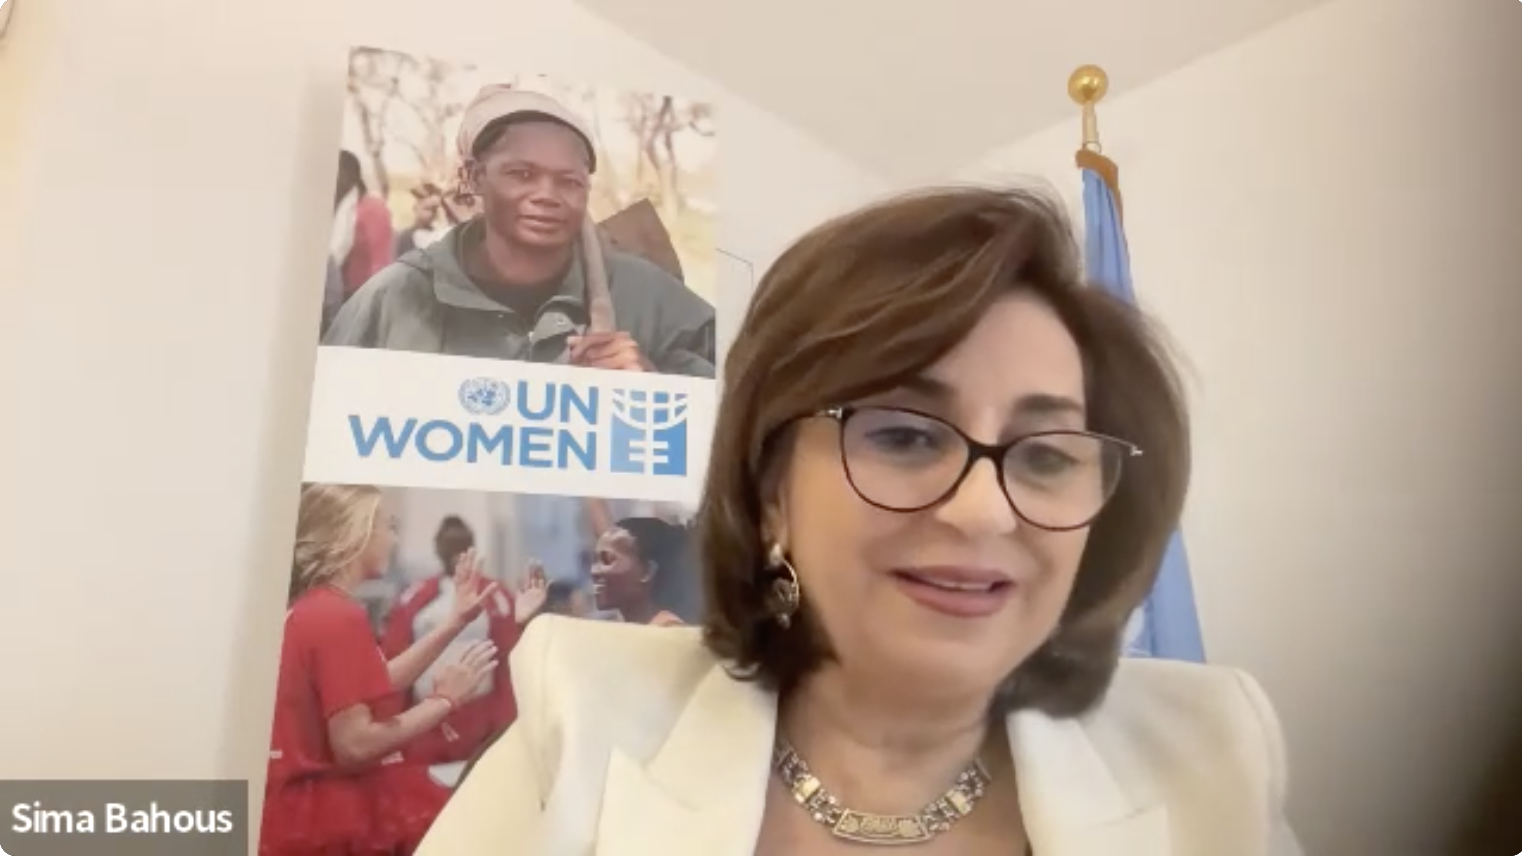 Sima Bahous, Executive Director of UN Women